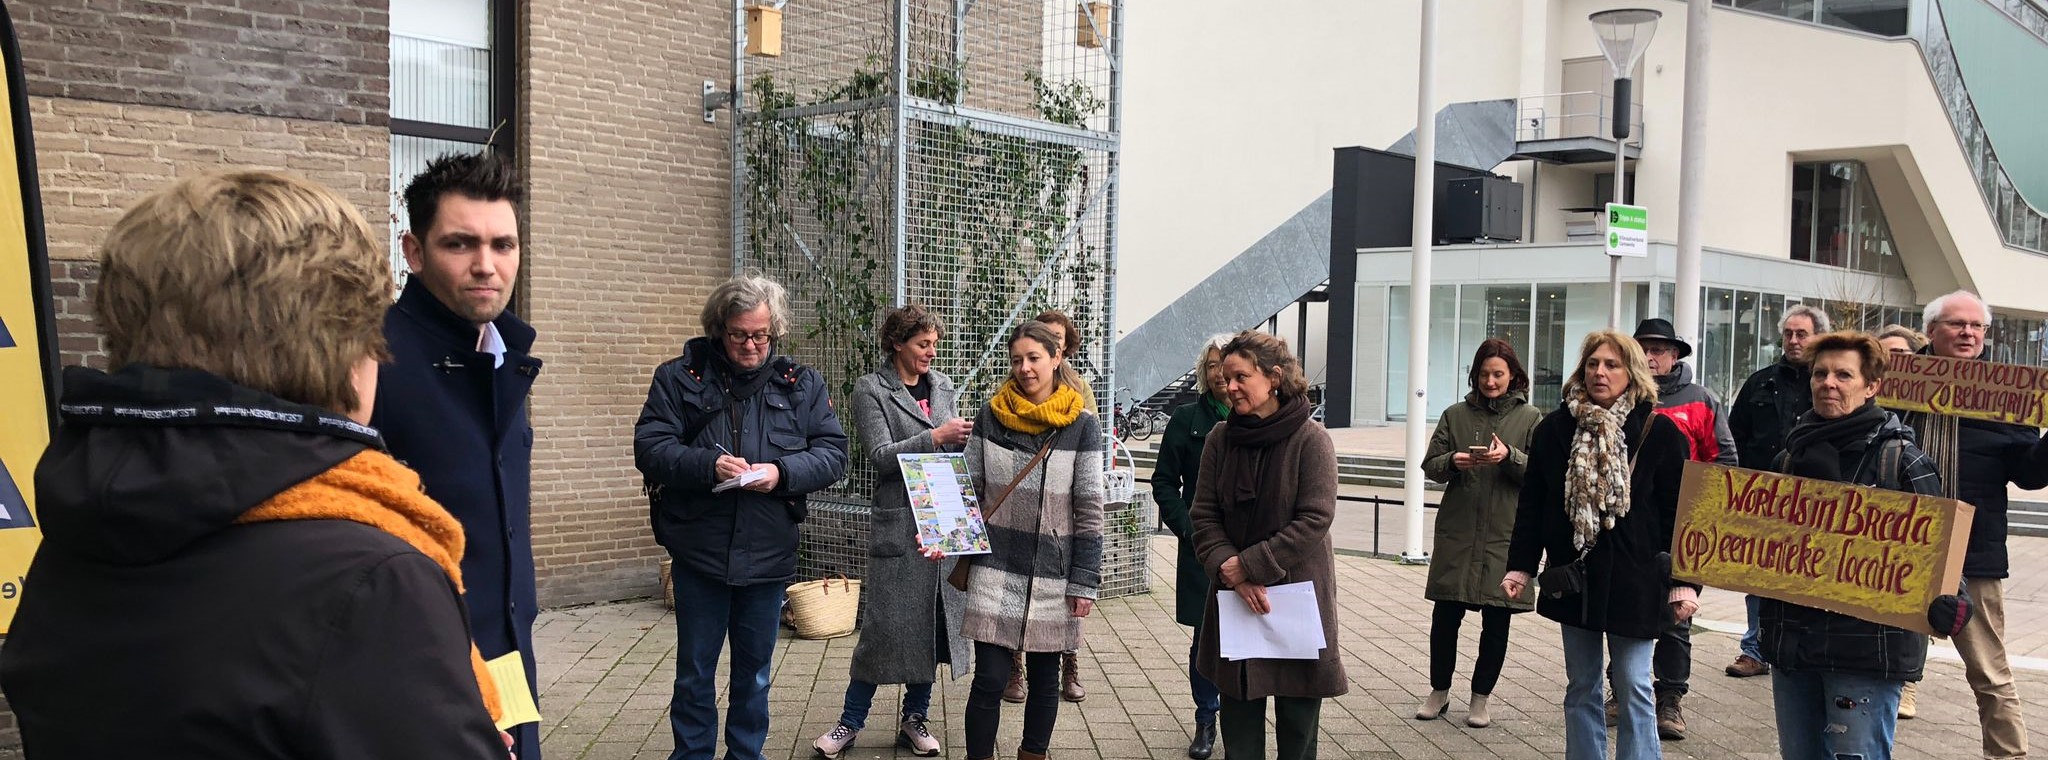 petitie Wortels in Breda aangeboden aan wethouder